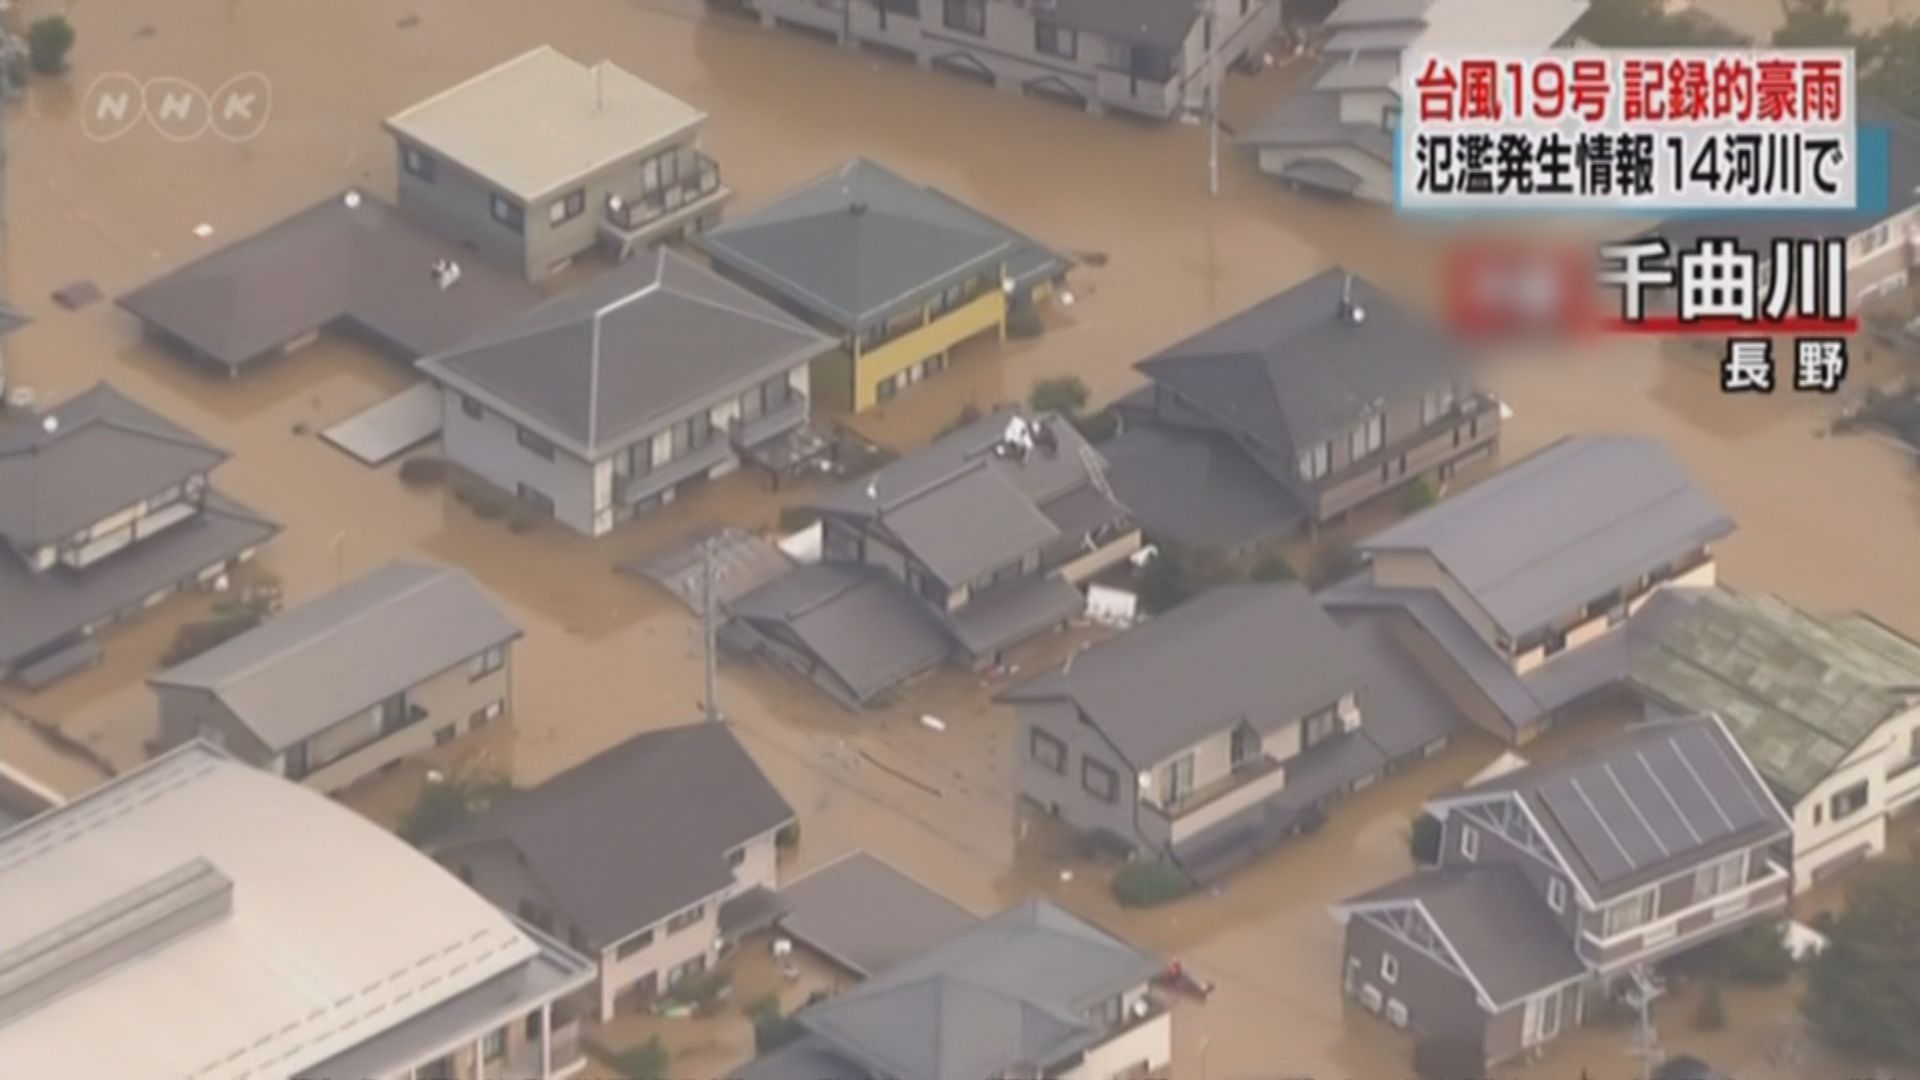 海貝思在日本造成嚴重破壞